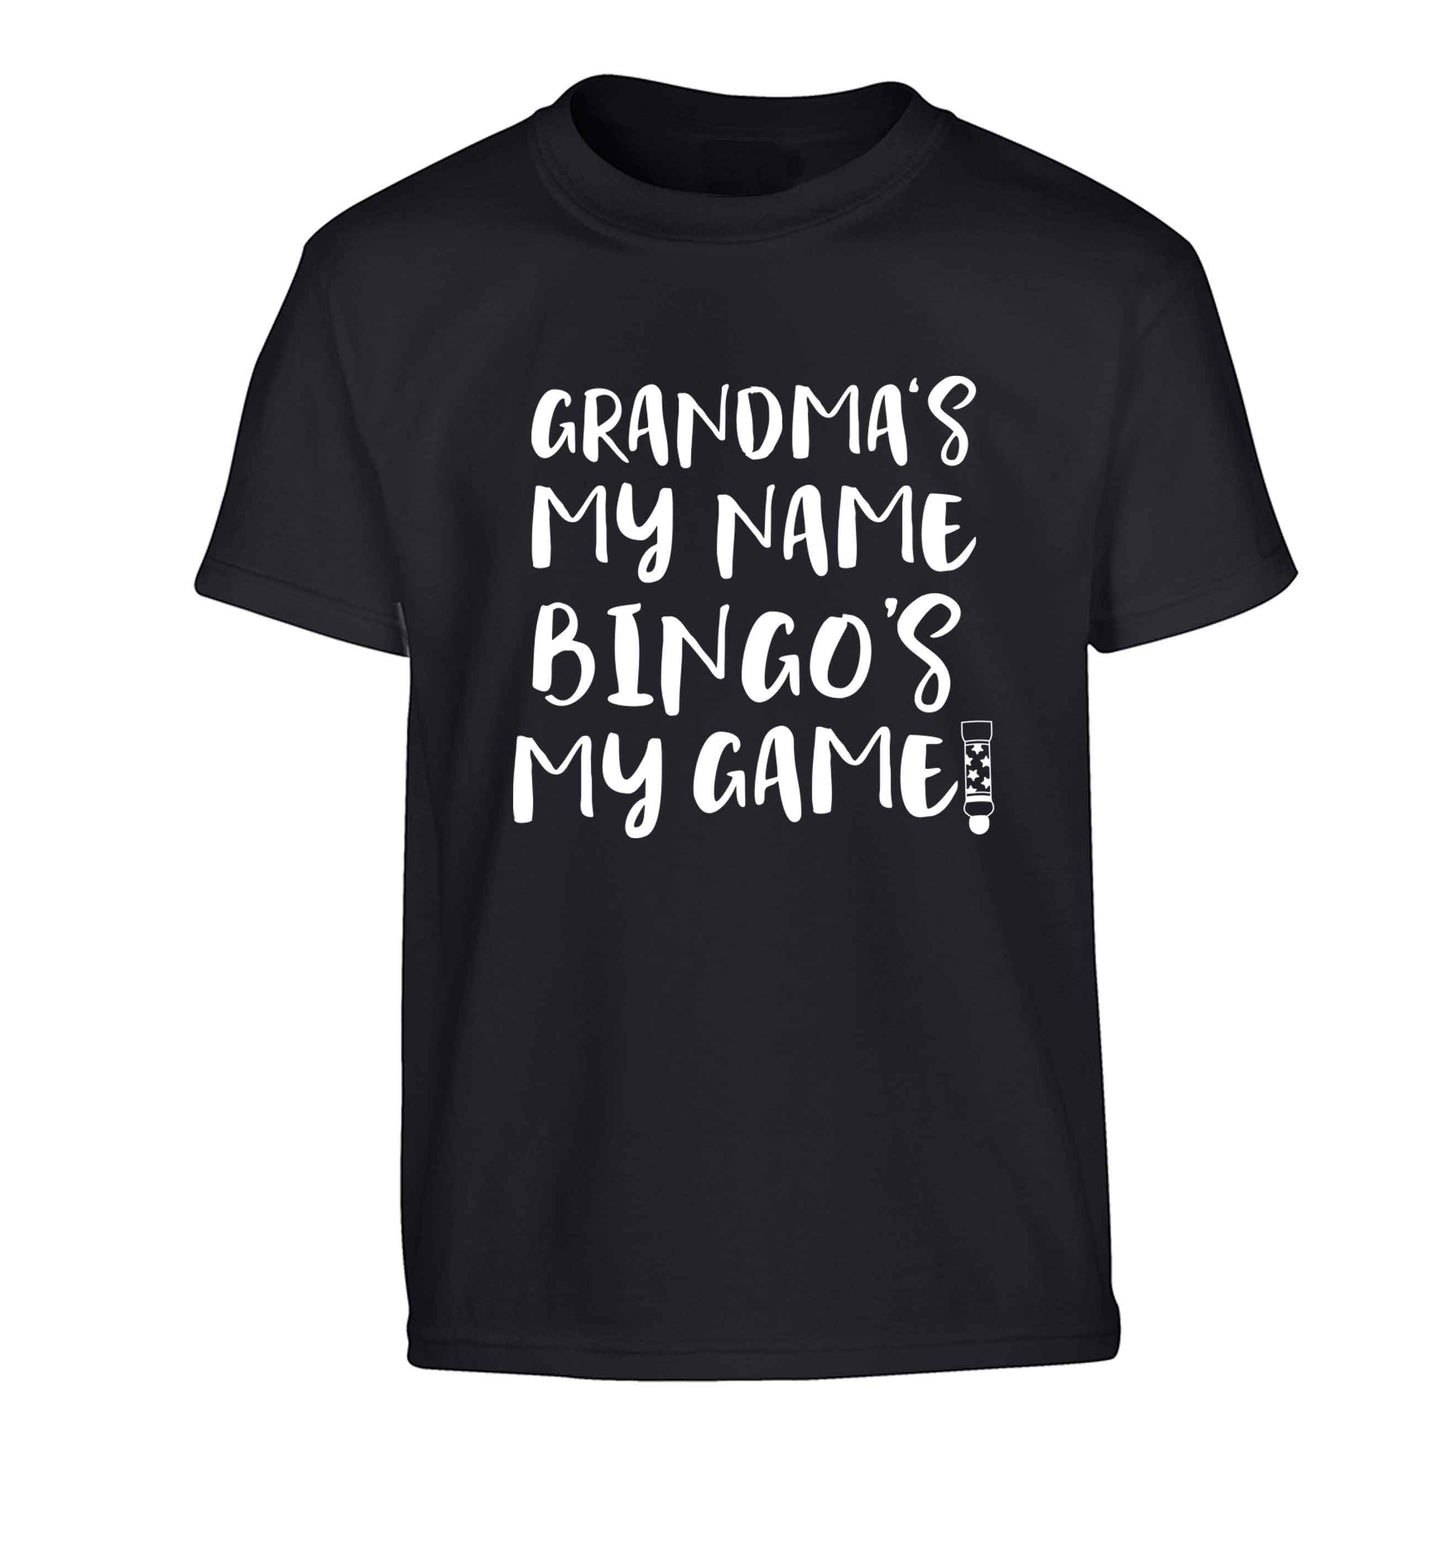 Grandma's my name bingo's my game! Children's black Tshirt 12-13 Years